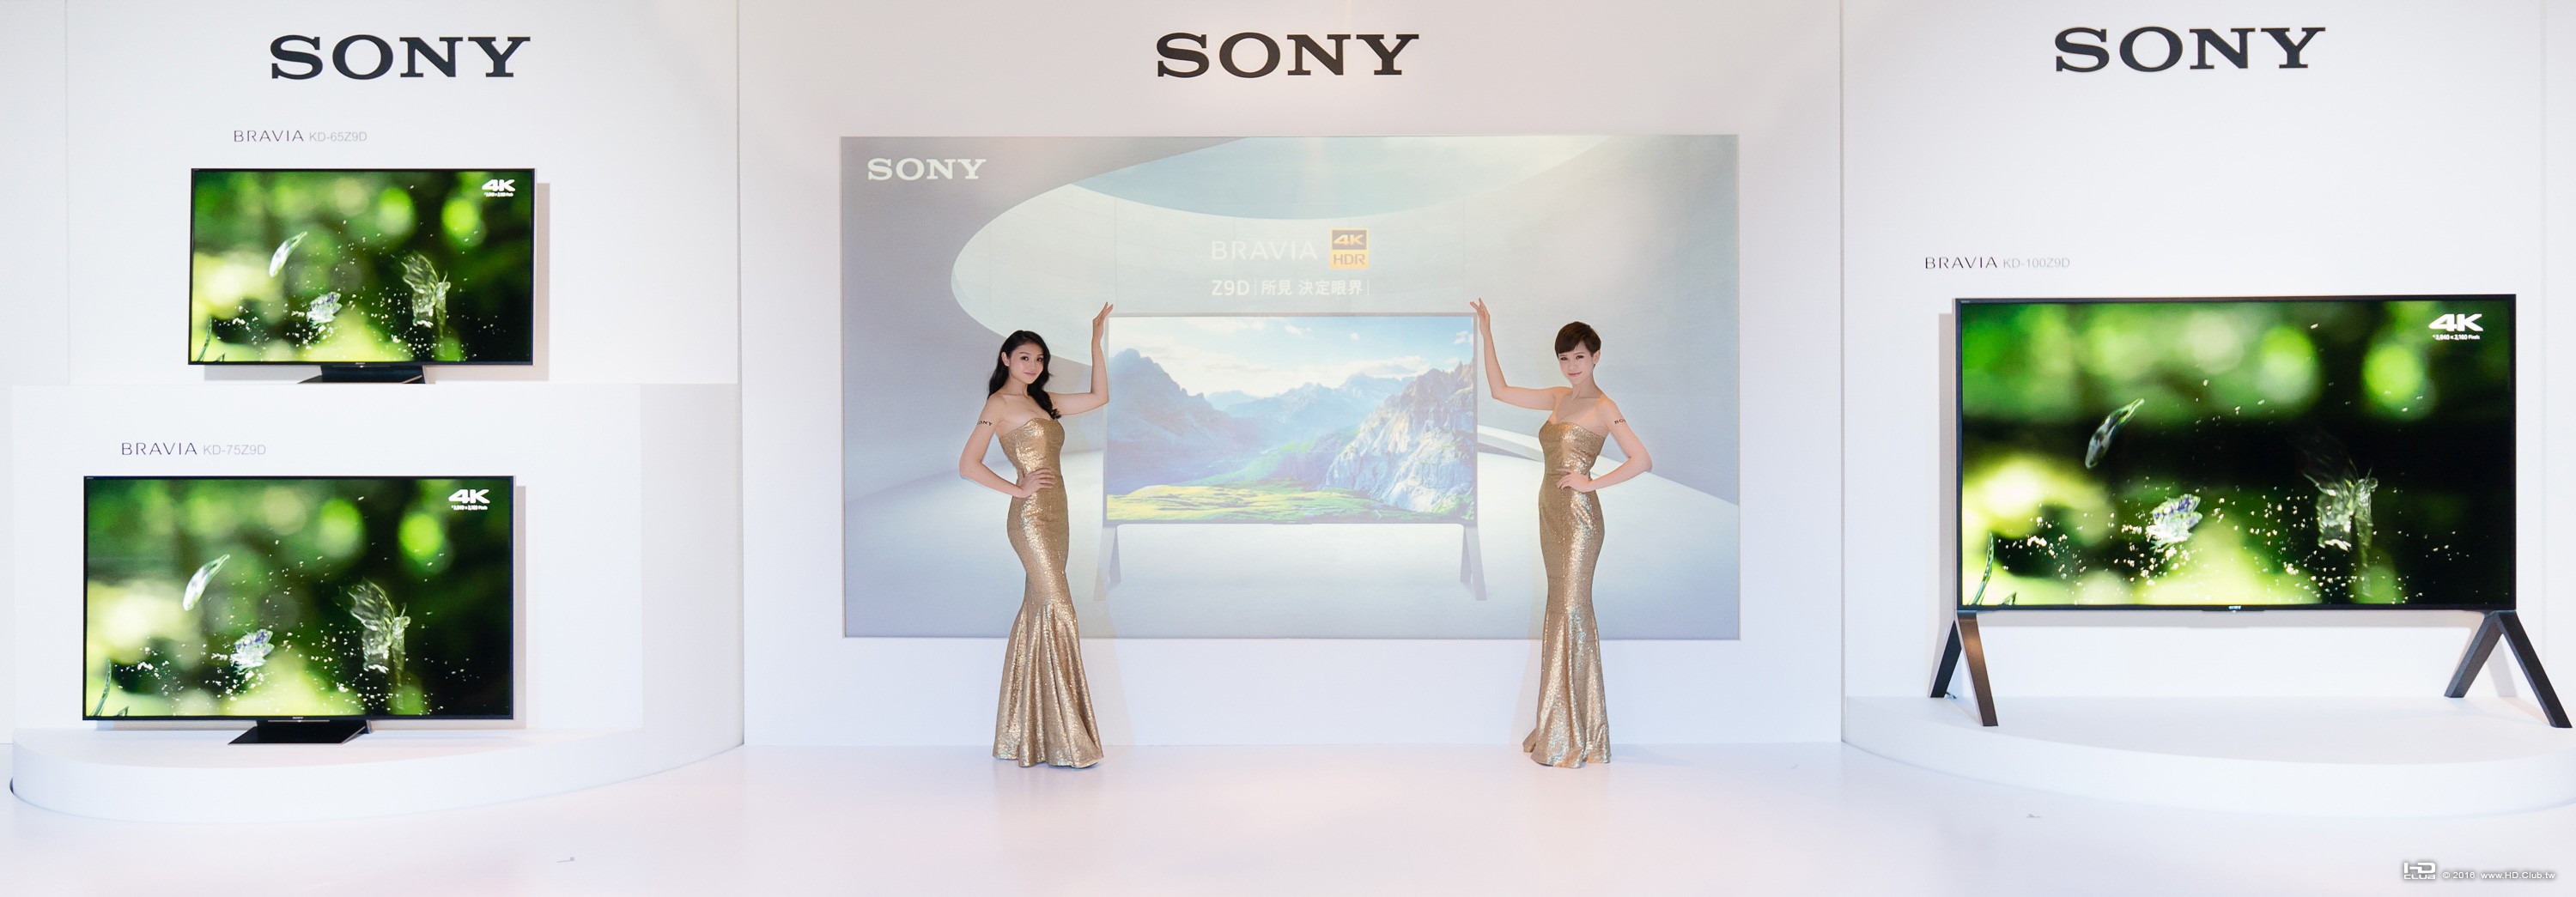 4. Sony全新2016 旗艦級BRAVIA 4K HDR液晶電視Z9D系列共有65吋、75吋及100吋螢幕機種..jpg